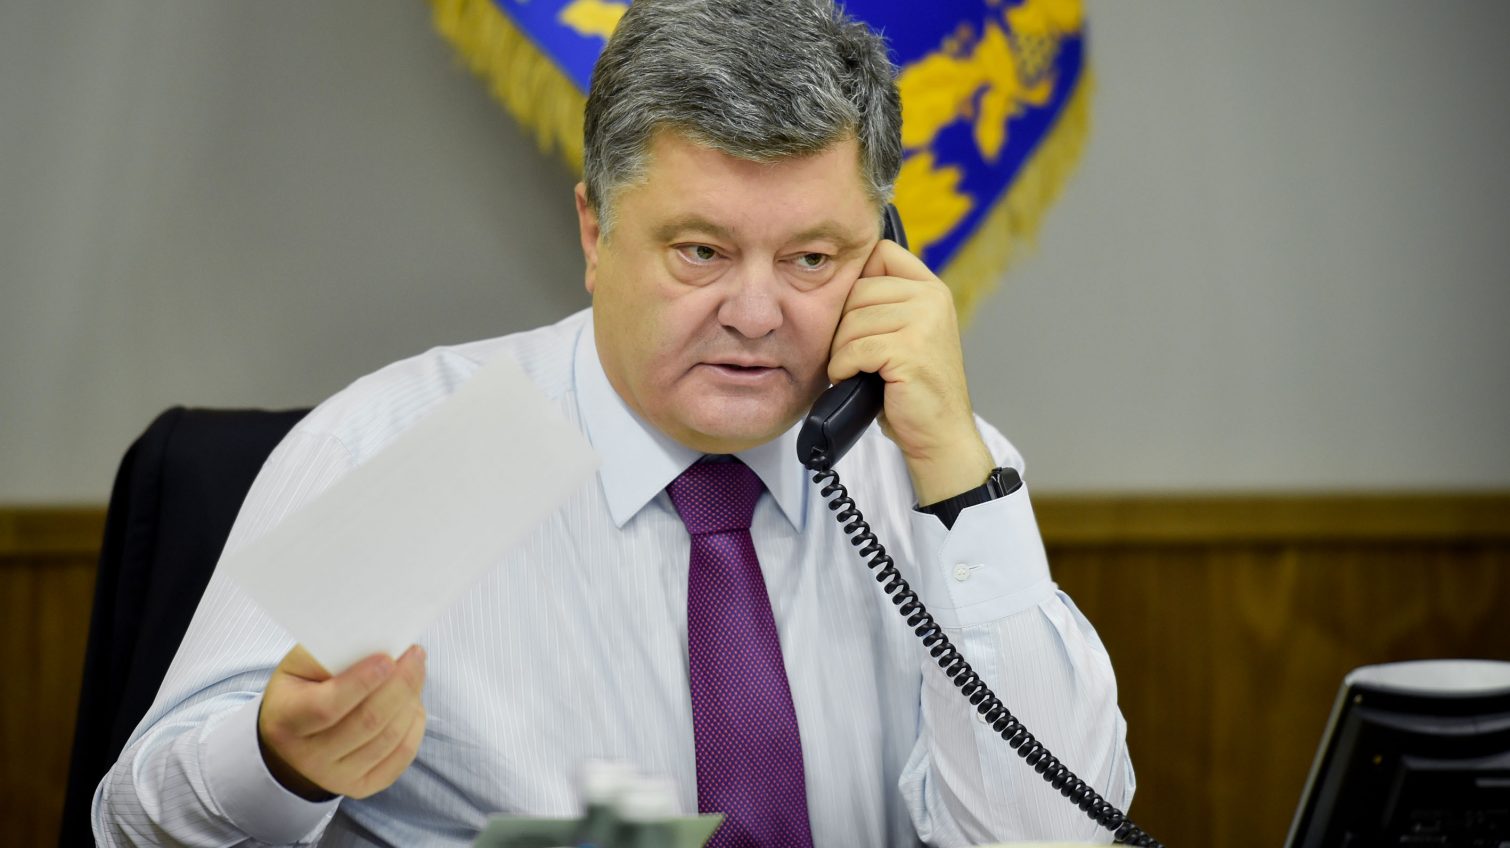 Президент уволил двух глав районов Одесской области «фото»